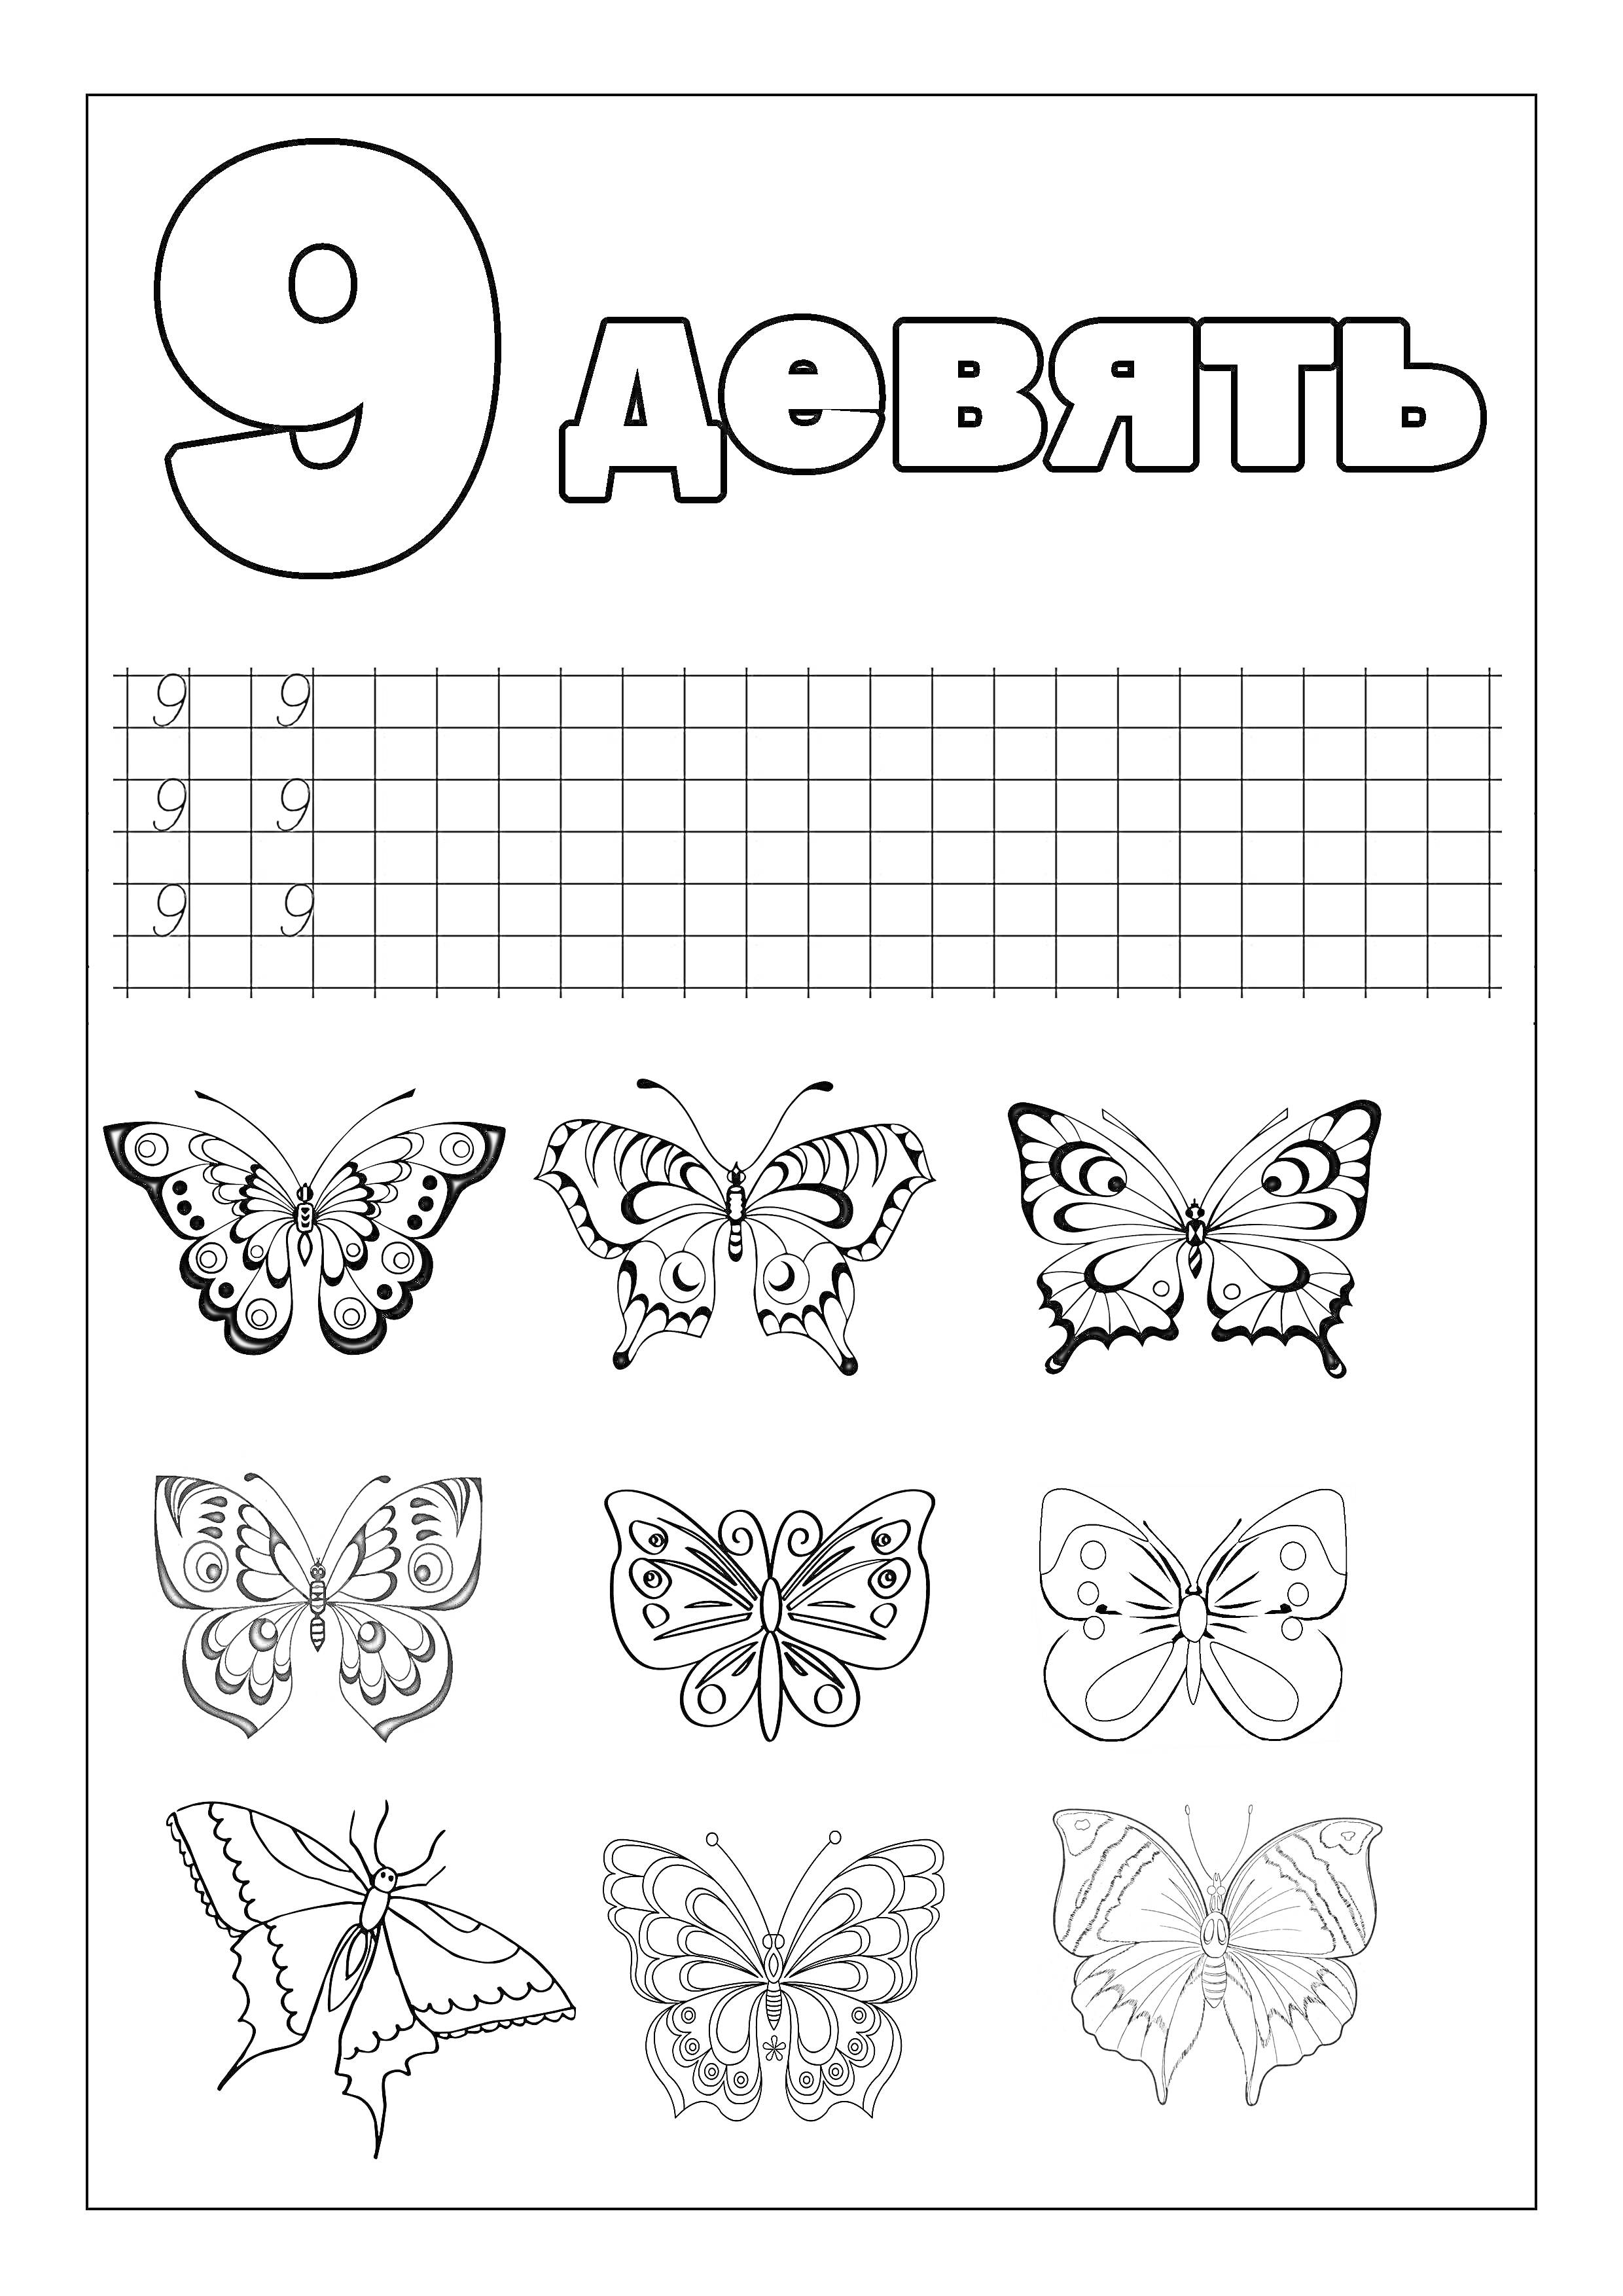 Раскраска с цифрой 9 и девятью бабочками